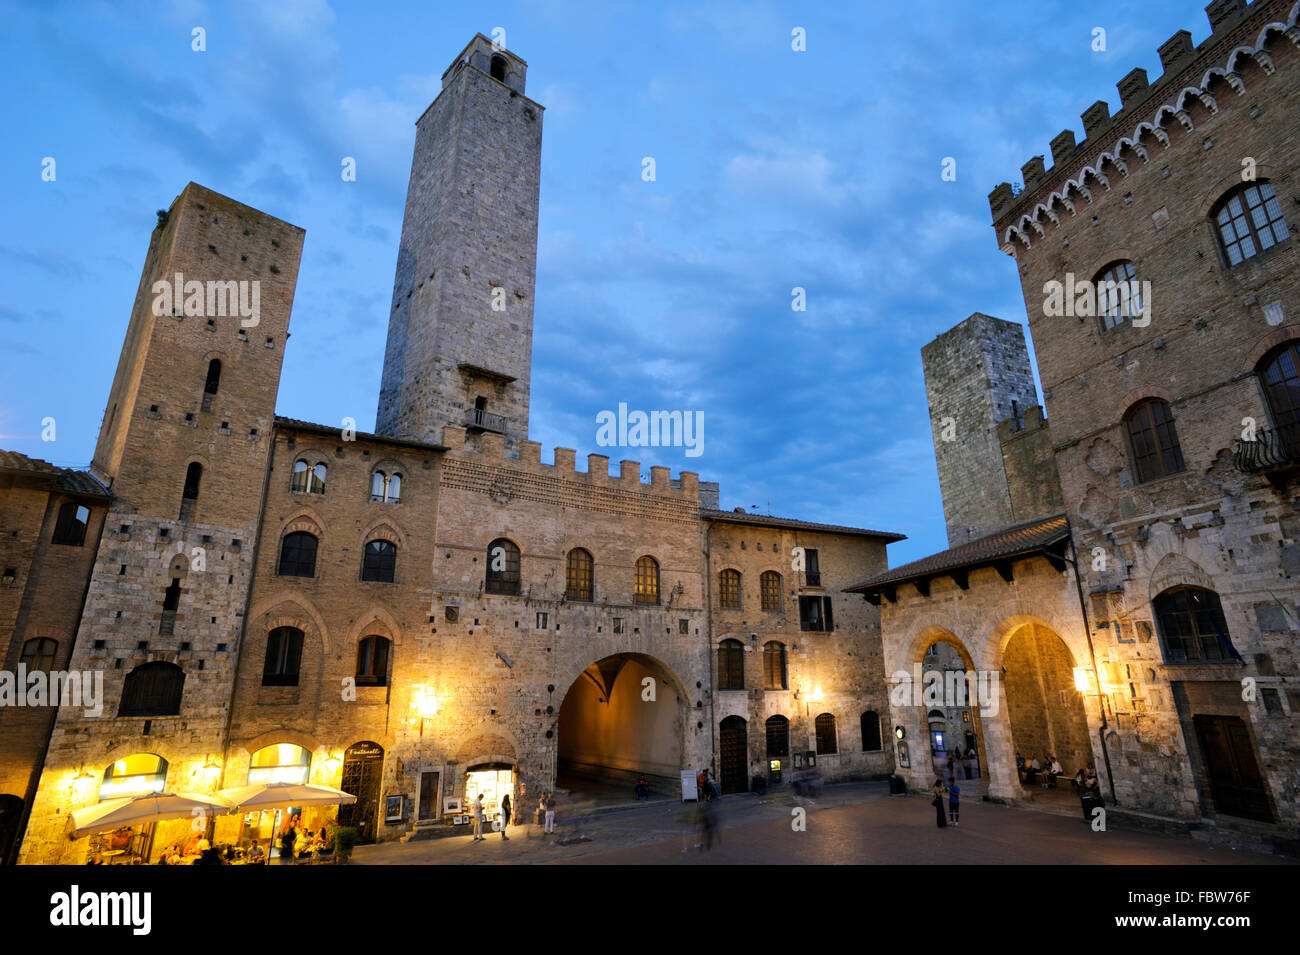 palazzo del podestà, piazza del duomo, san gimignano, tuscany, italy Stock Photo